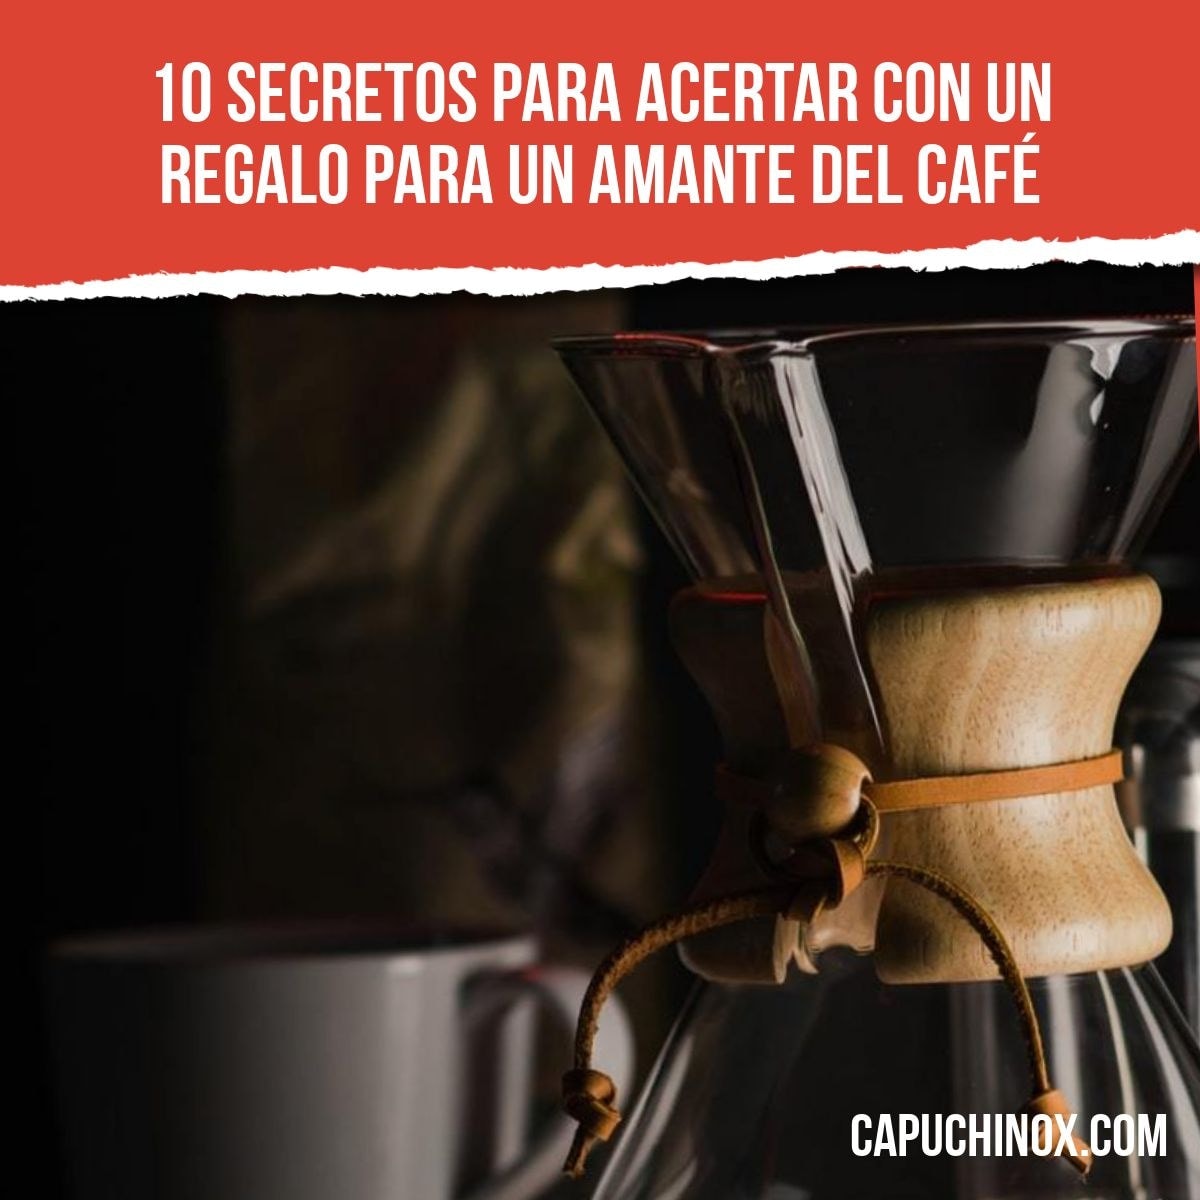 10 secretos para acertar con un regalo para un amante del café